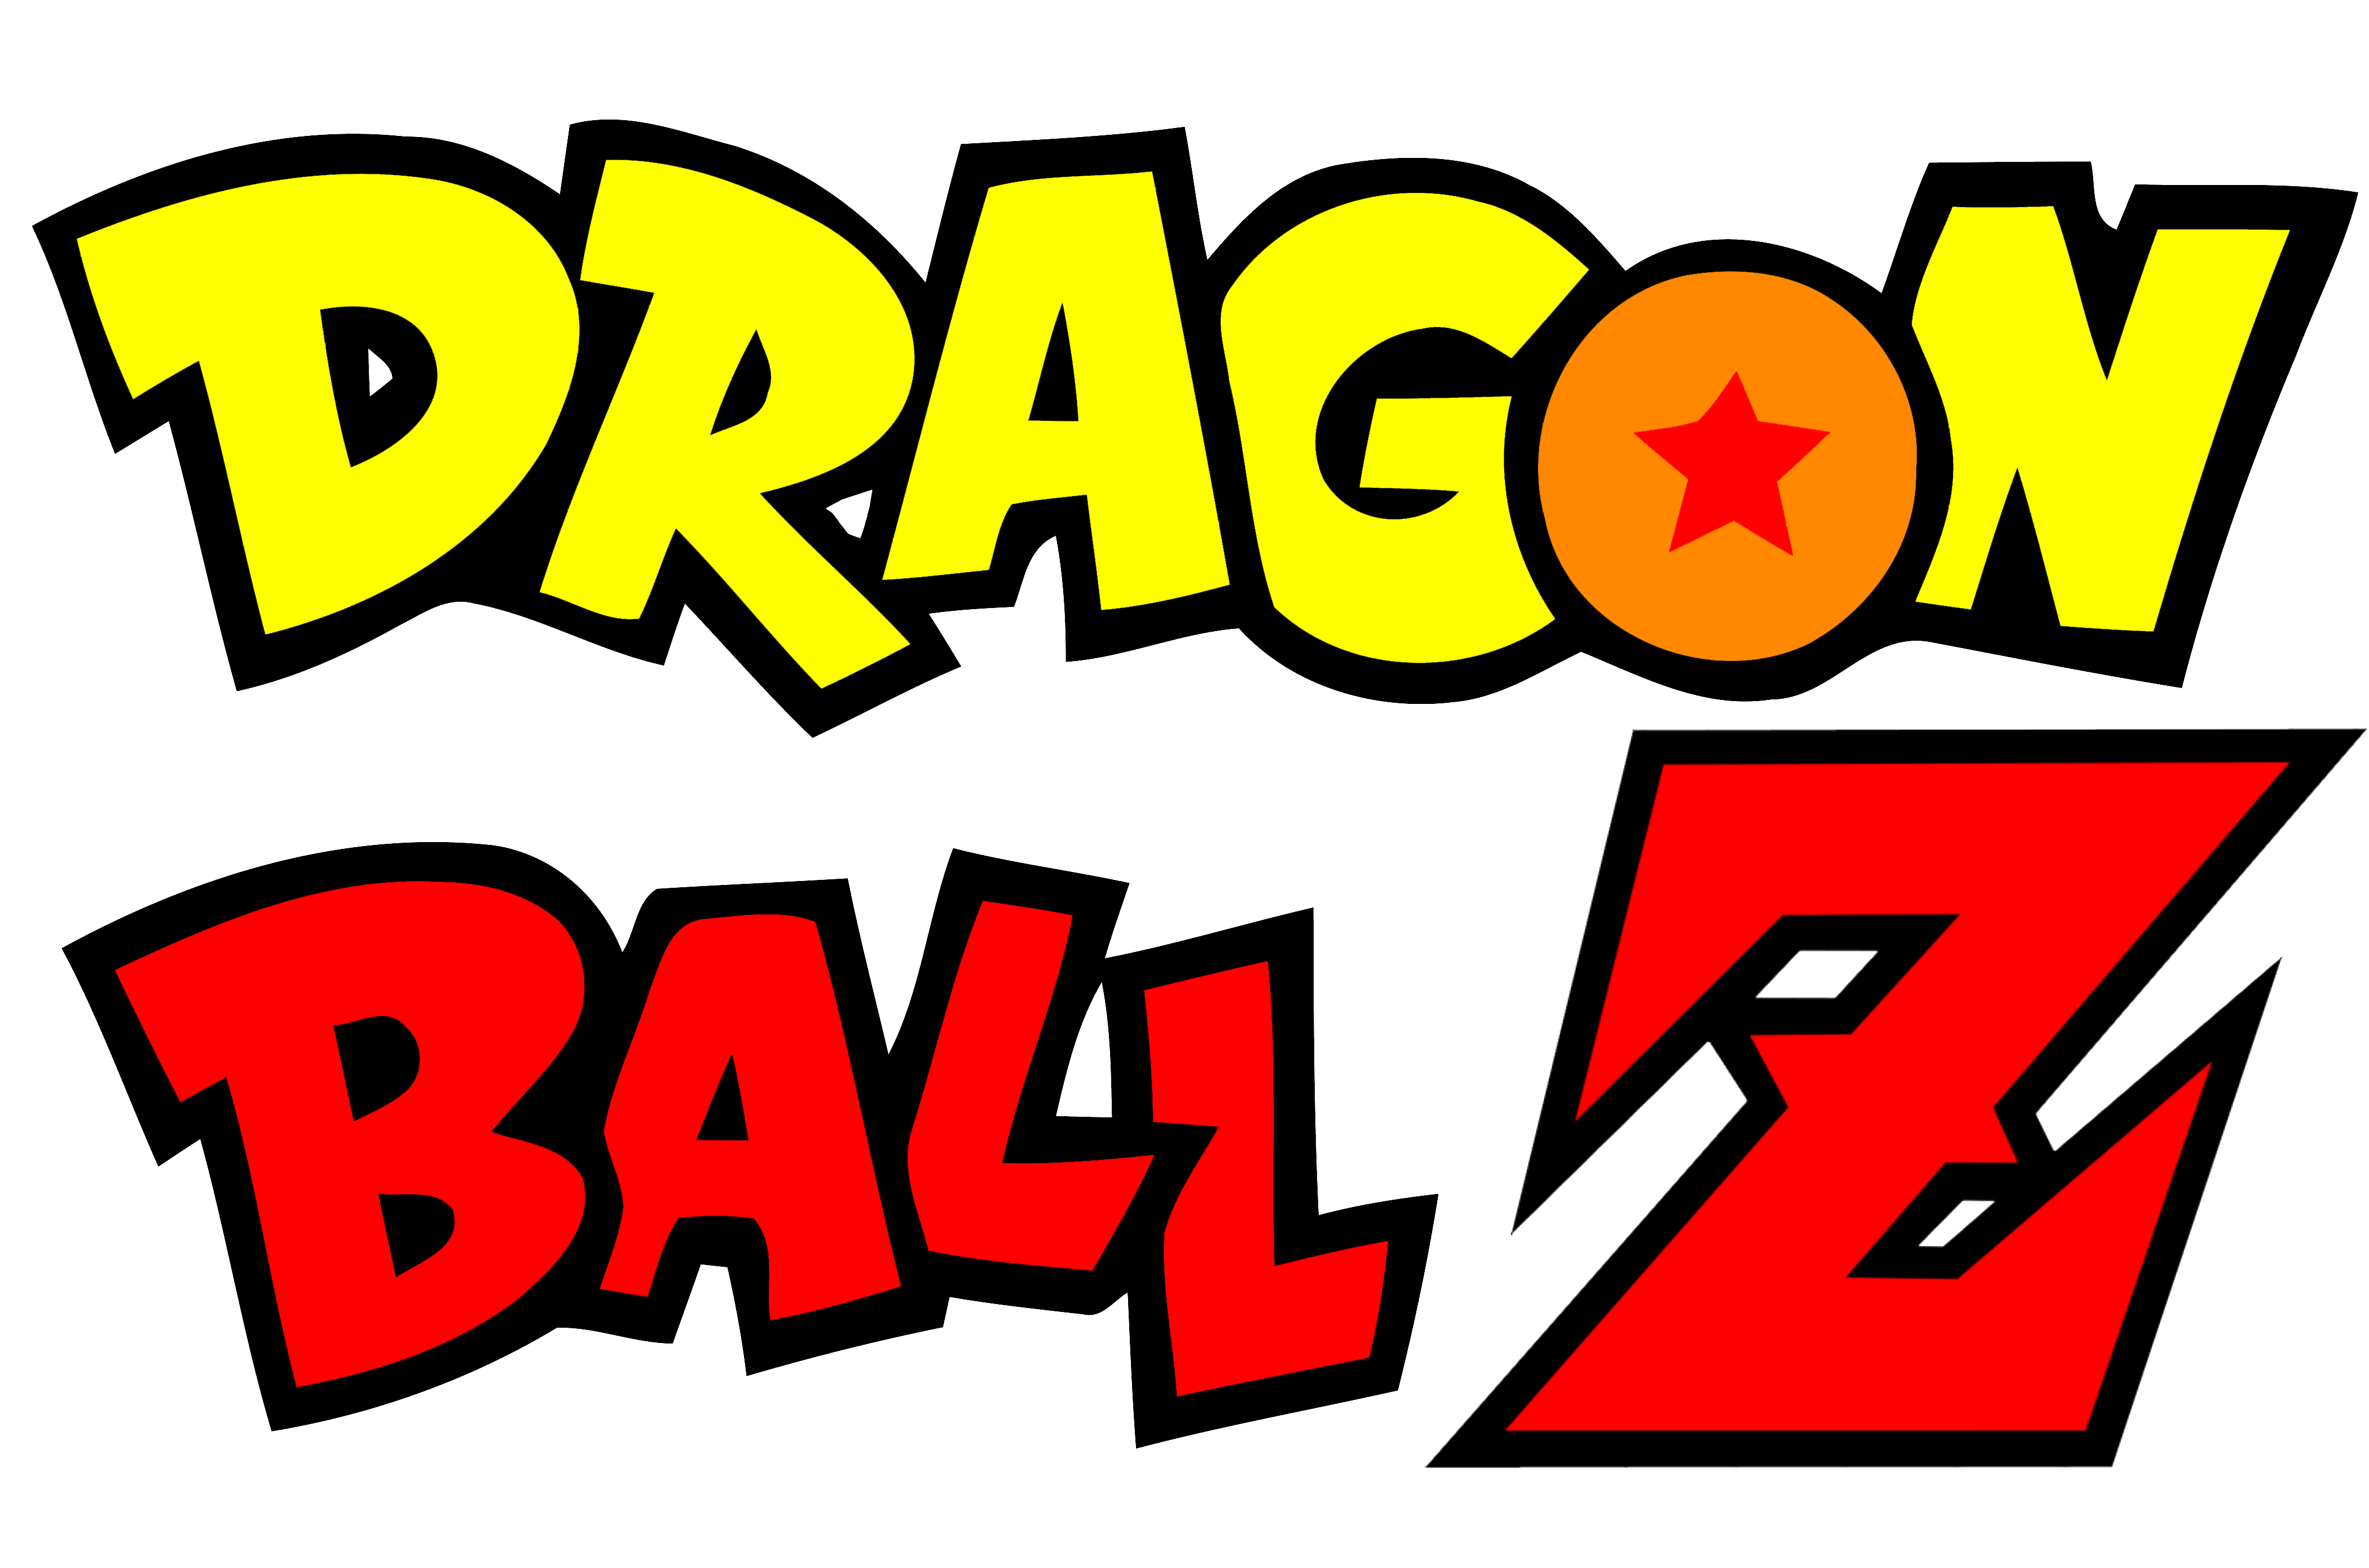 DragonBall